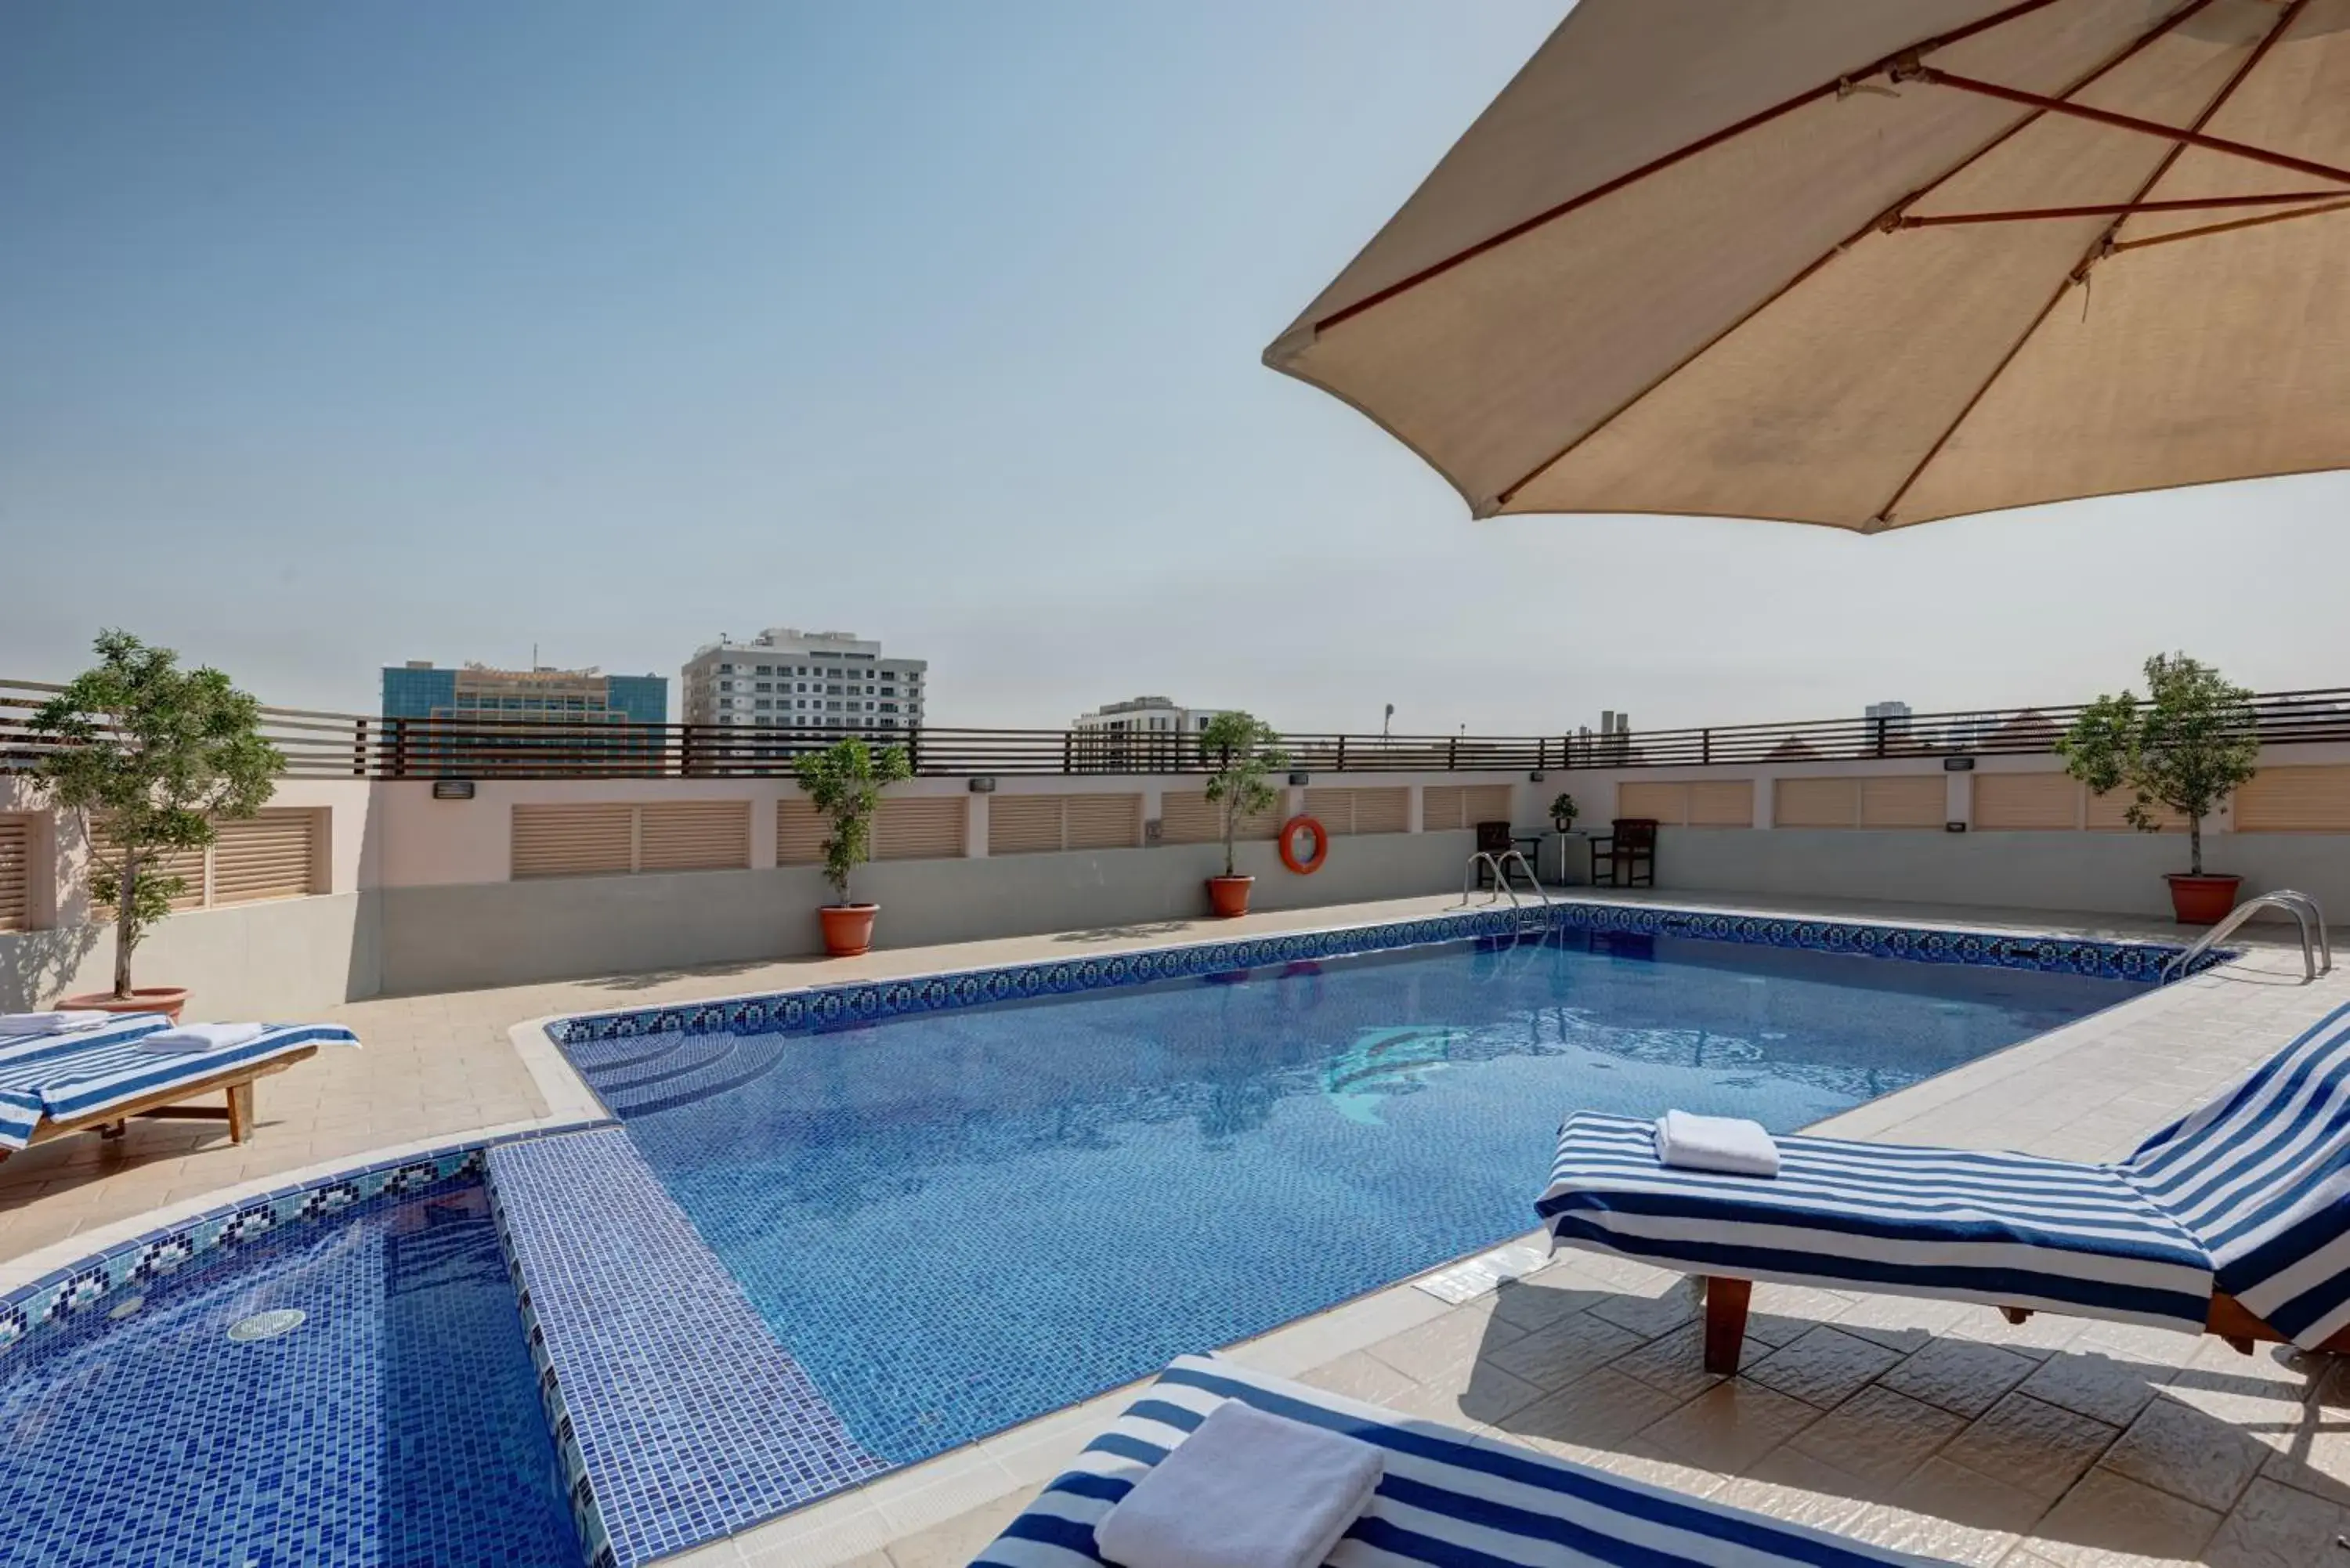 Swimming Pool in Radiance Premium Suites